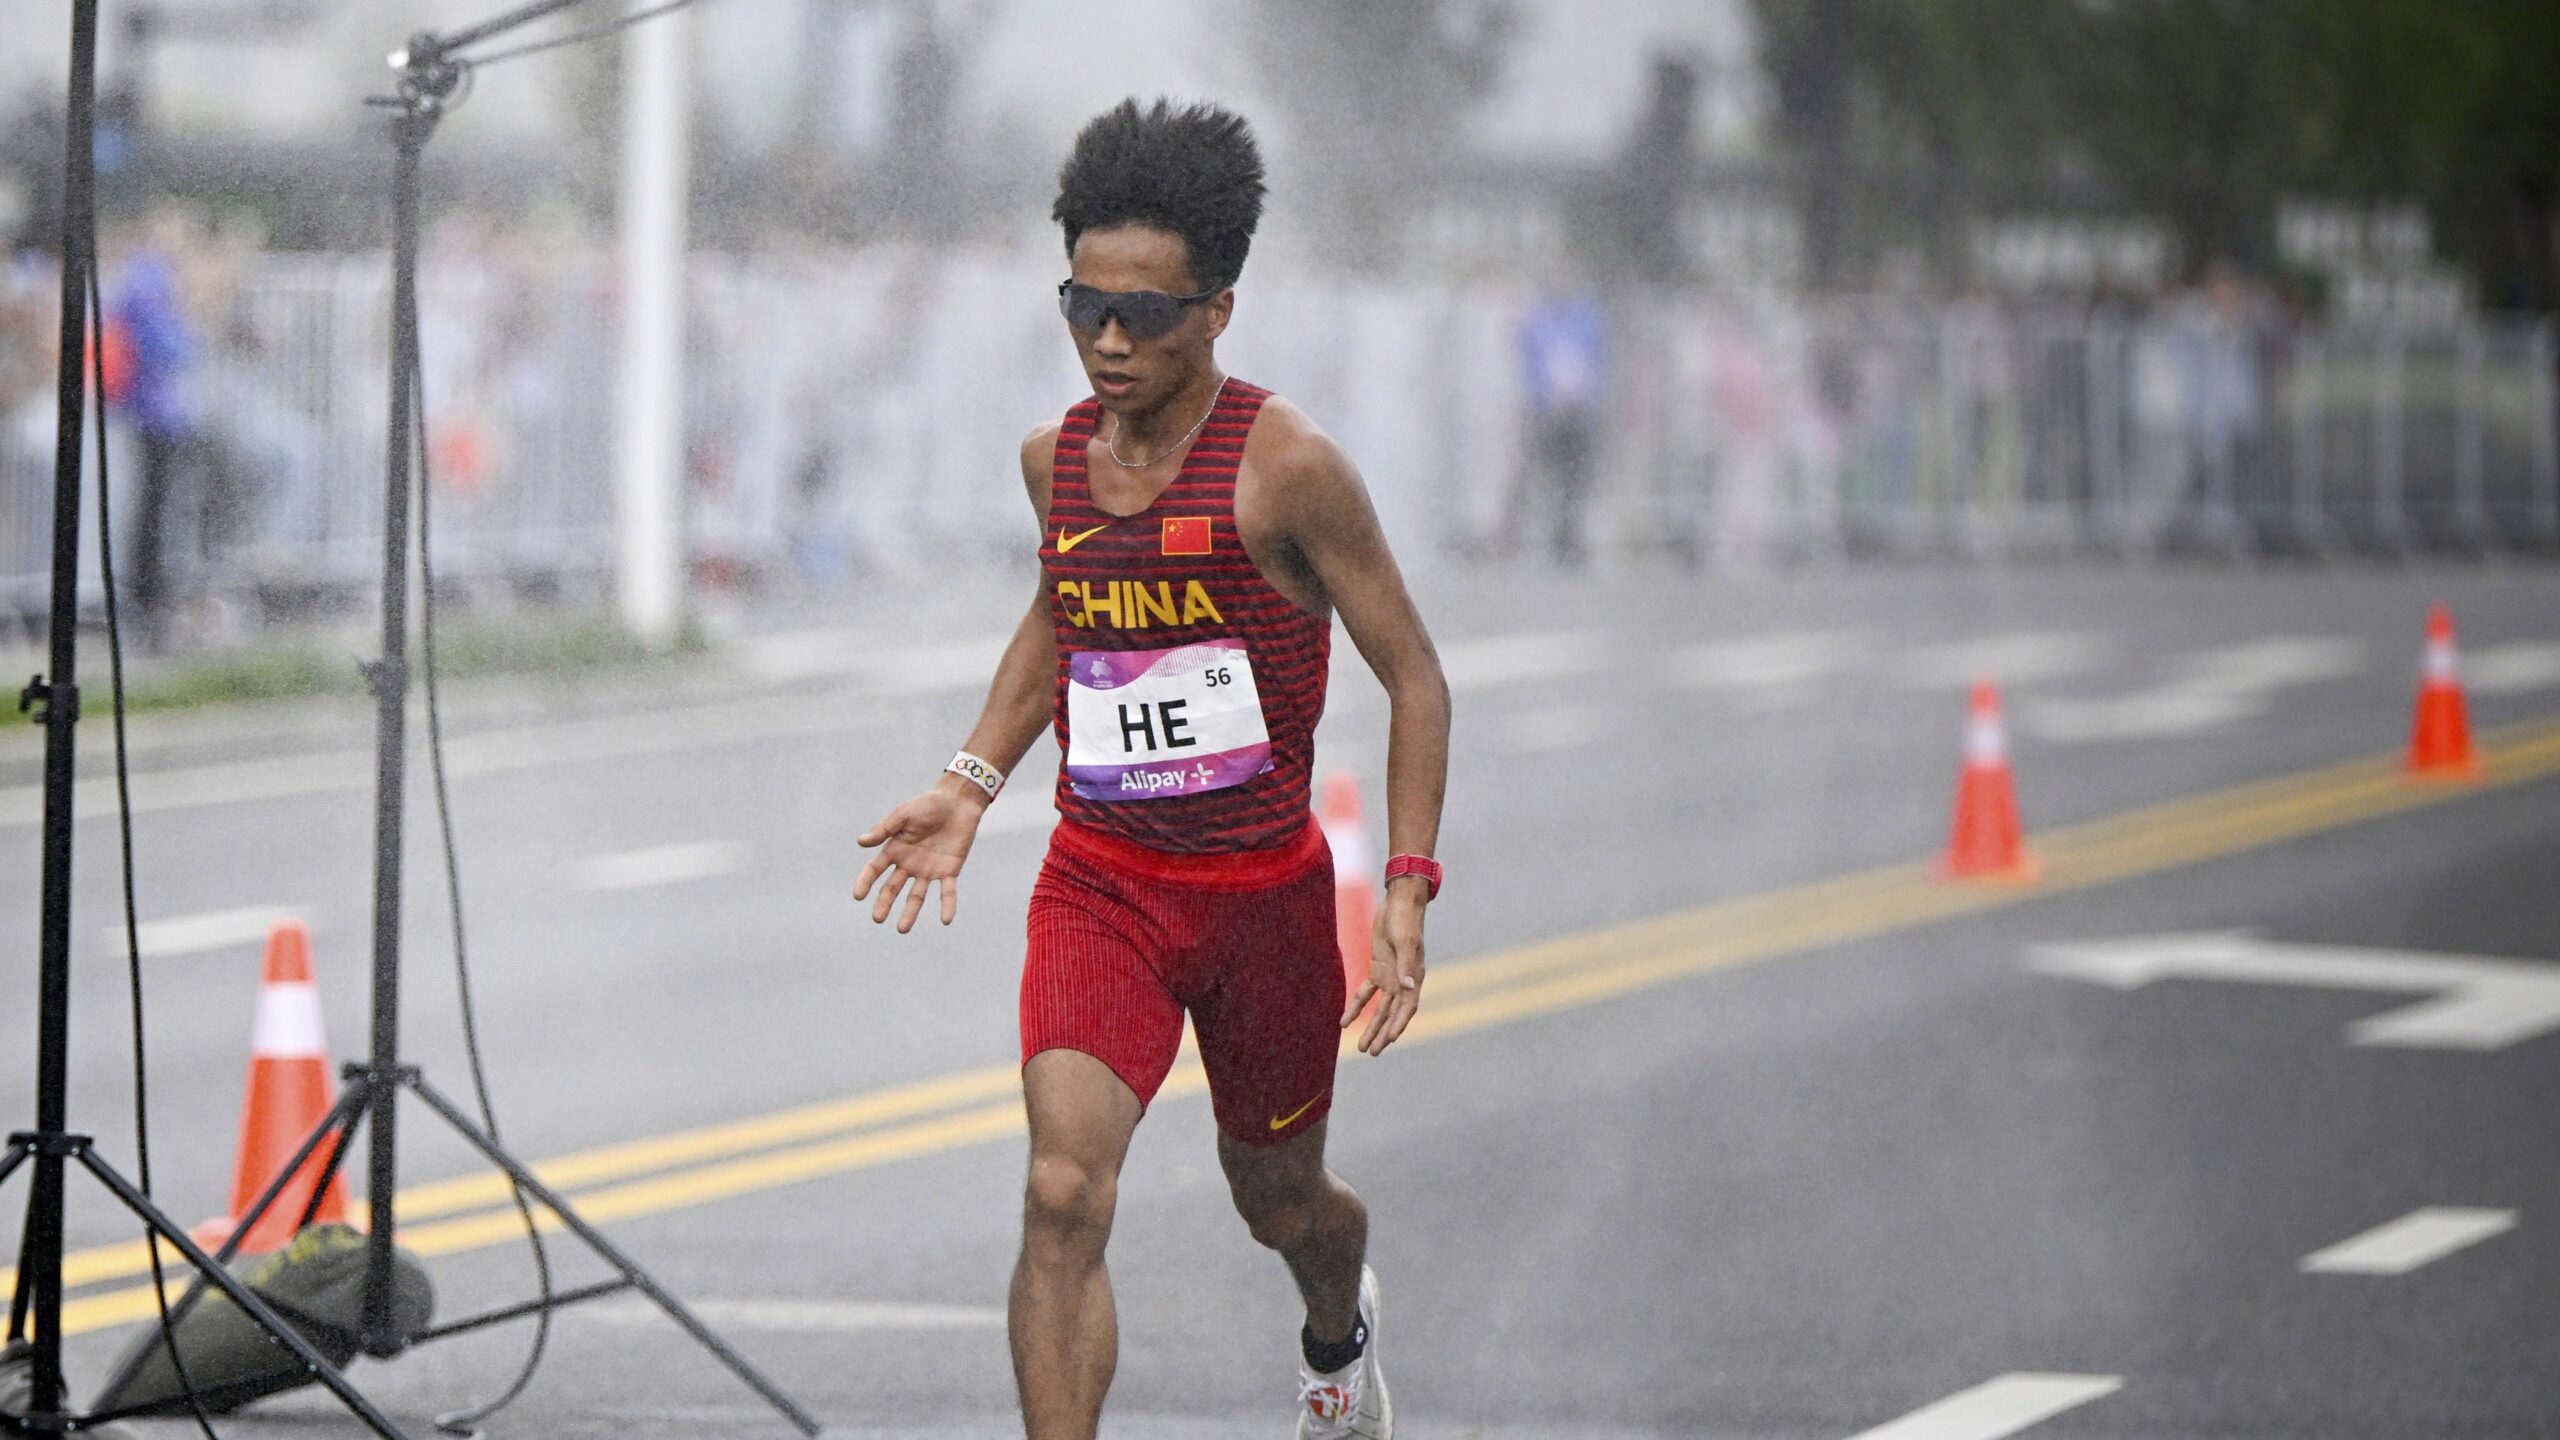 Corredores ganadores fueron descalificados por supuesto amaño en Medio Maratón de Beijing – El Diario NY